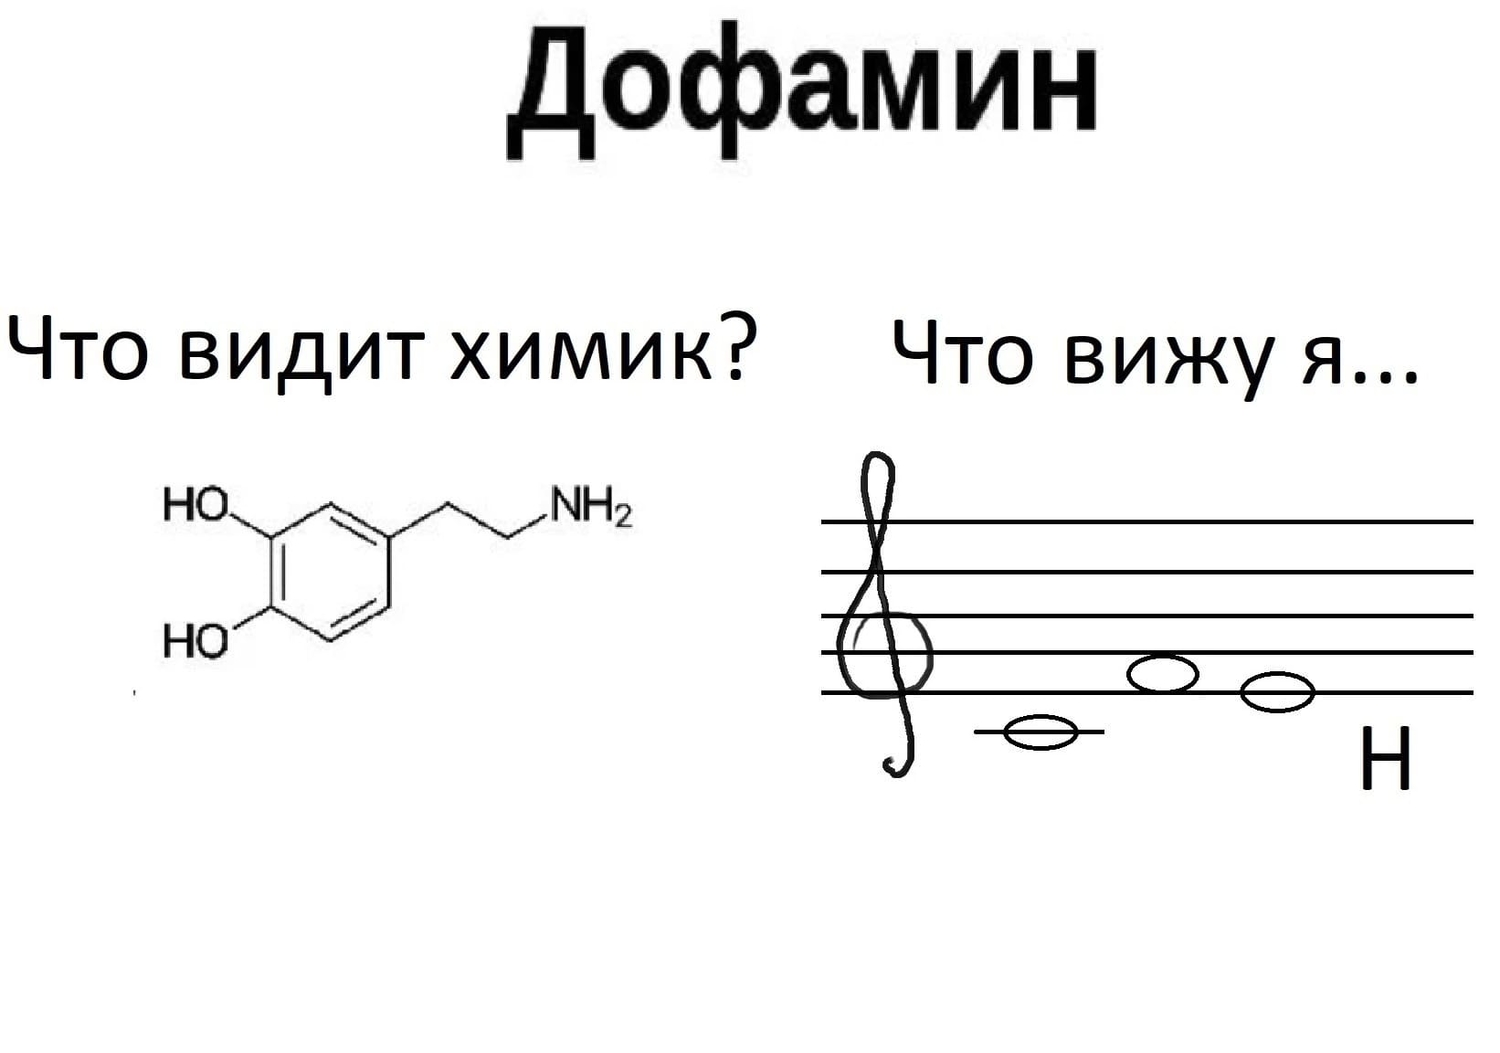 при слове «Дофамин»
Что видит химик? *Химическая формула*
Что вижу я... *Сольфеджио*